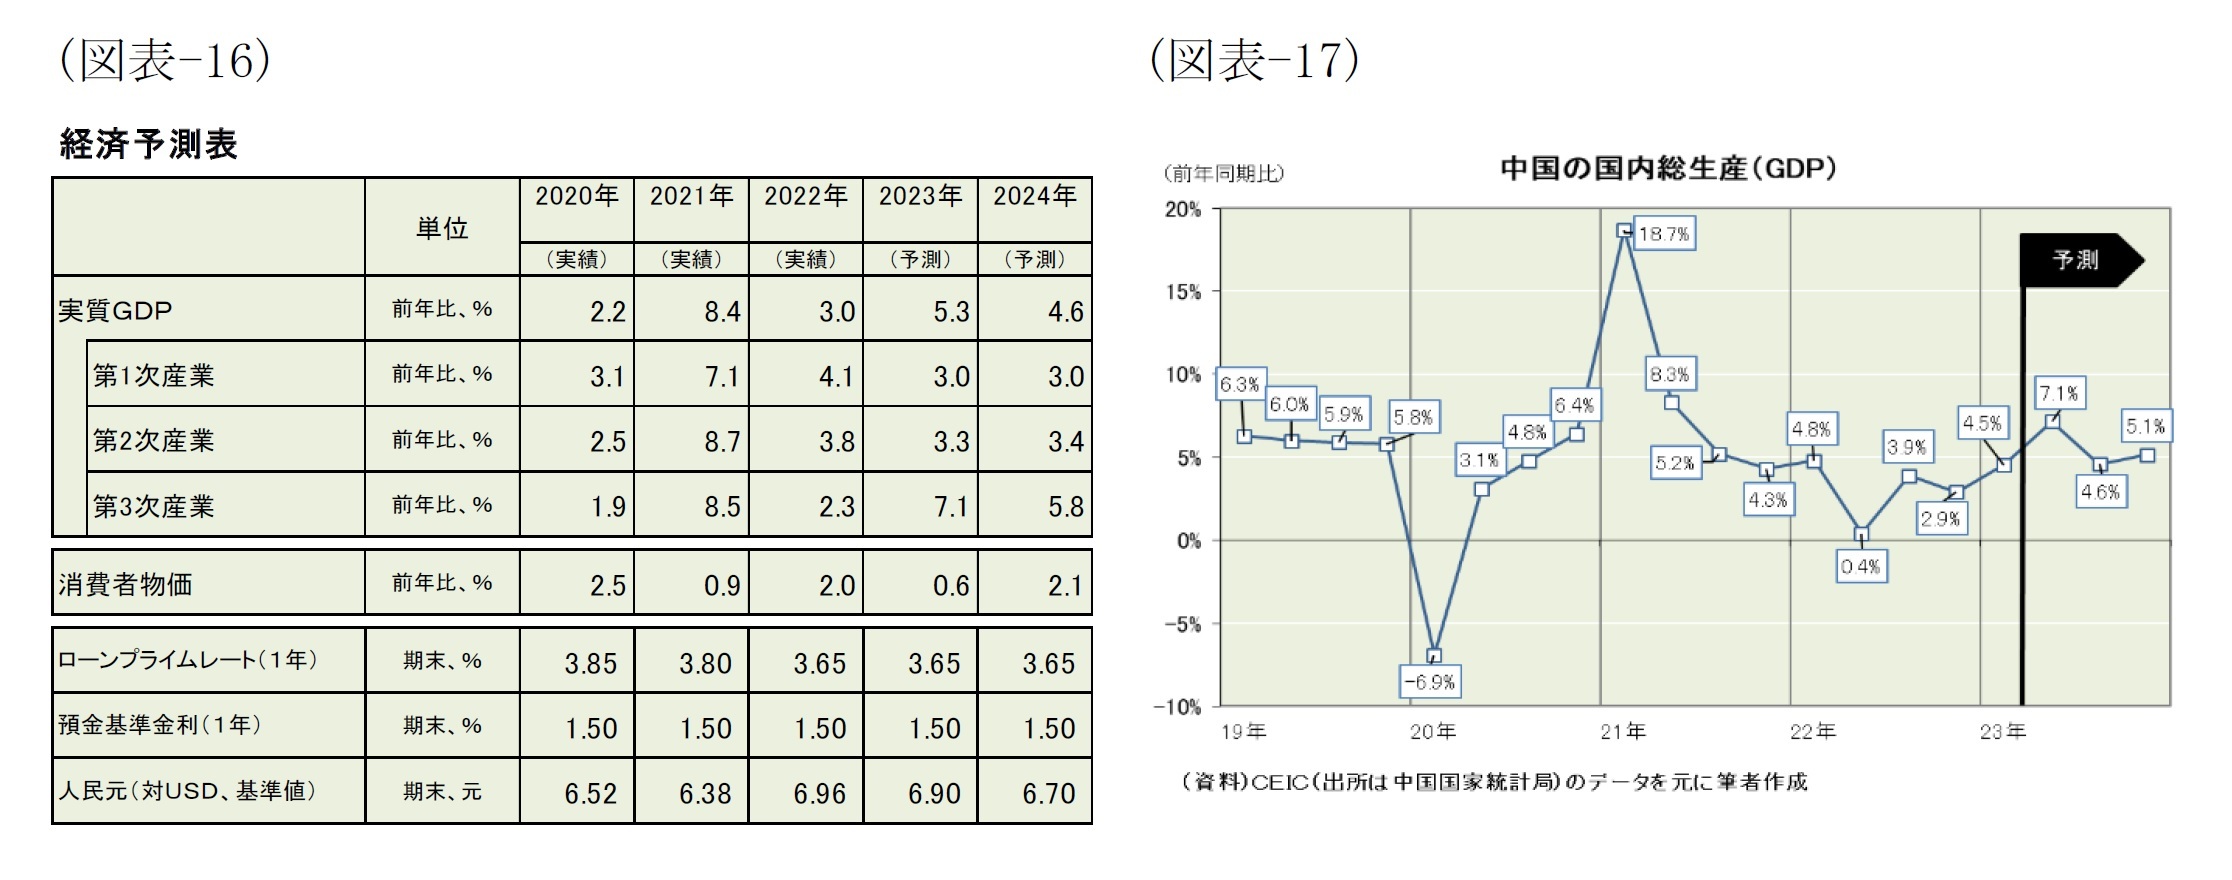 (図表-16)経済予測表/(図表-17)中国の国内総生産(GDP)